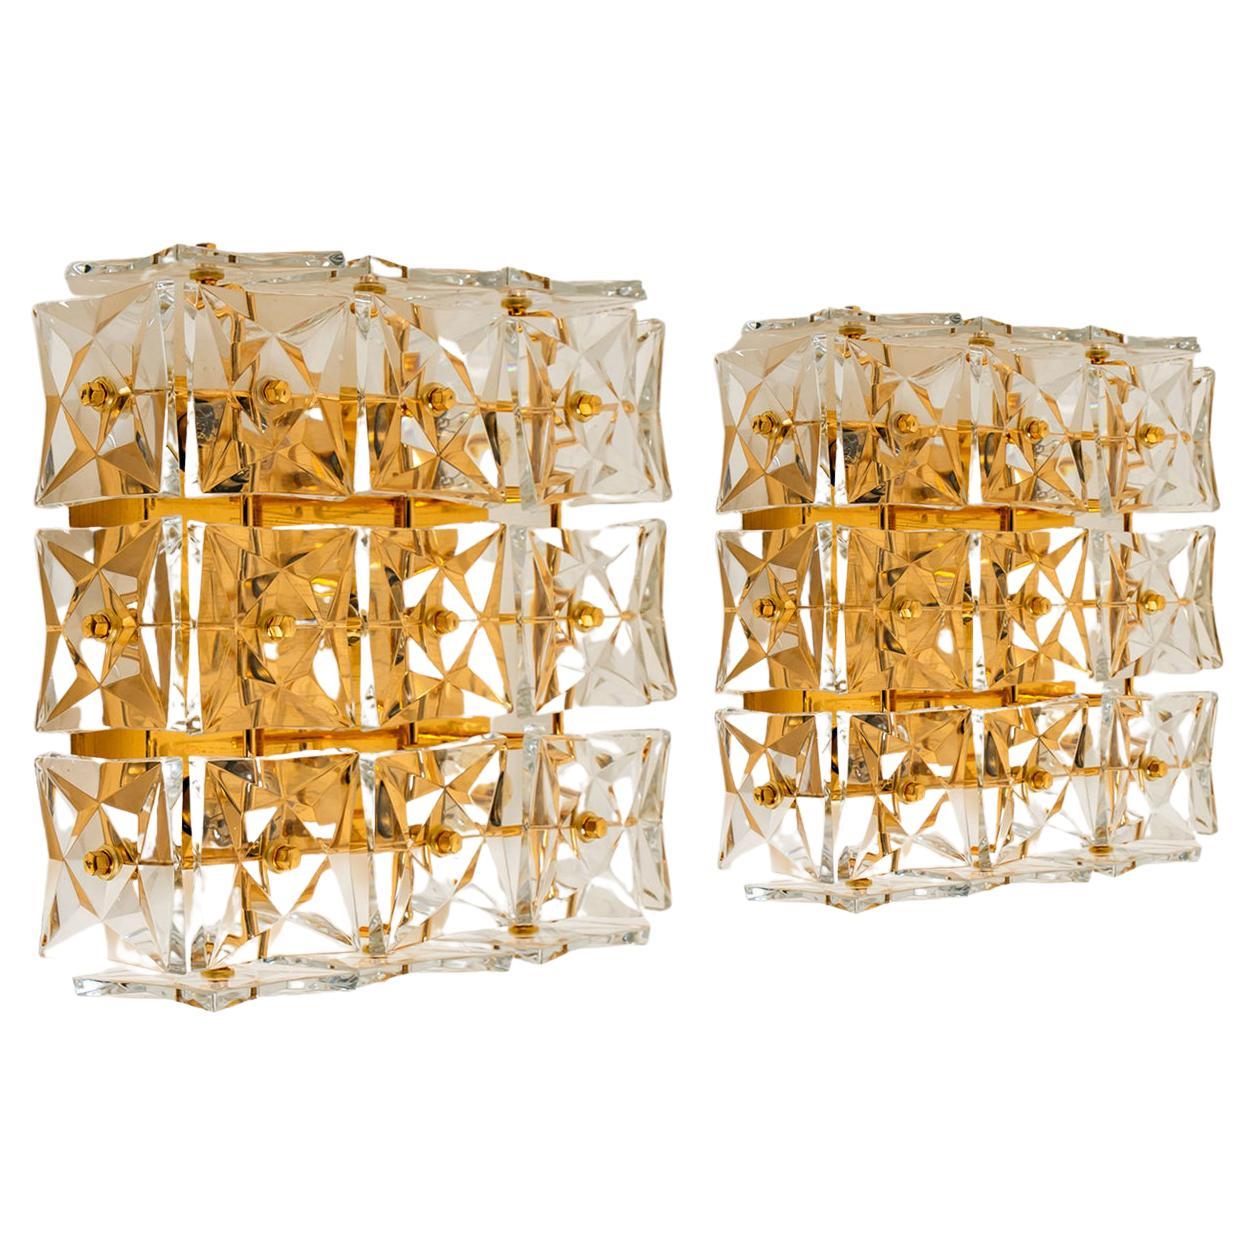 1 der 2 vergoldeten Kinkeldey-Wandleuchten aus Kristallglas oder Einbaubeleuchtung 1970er Jahre